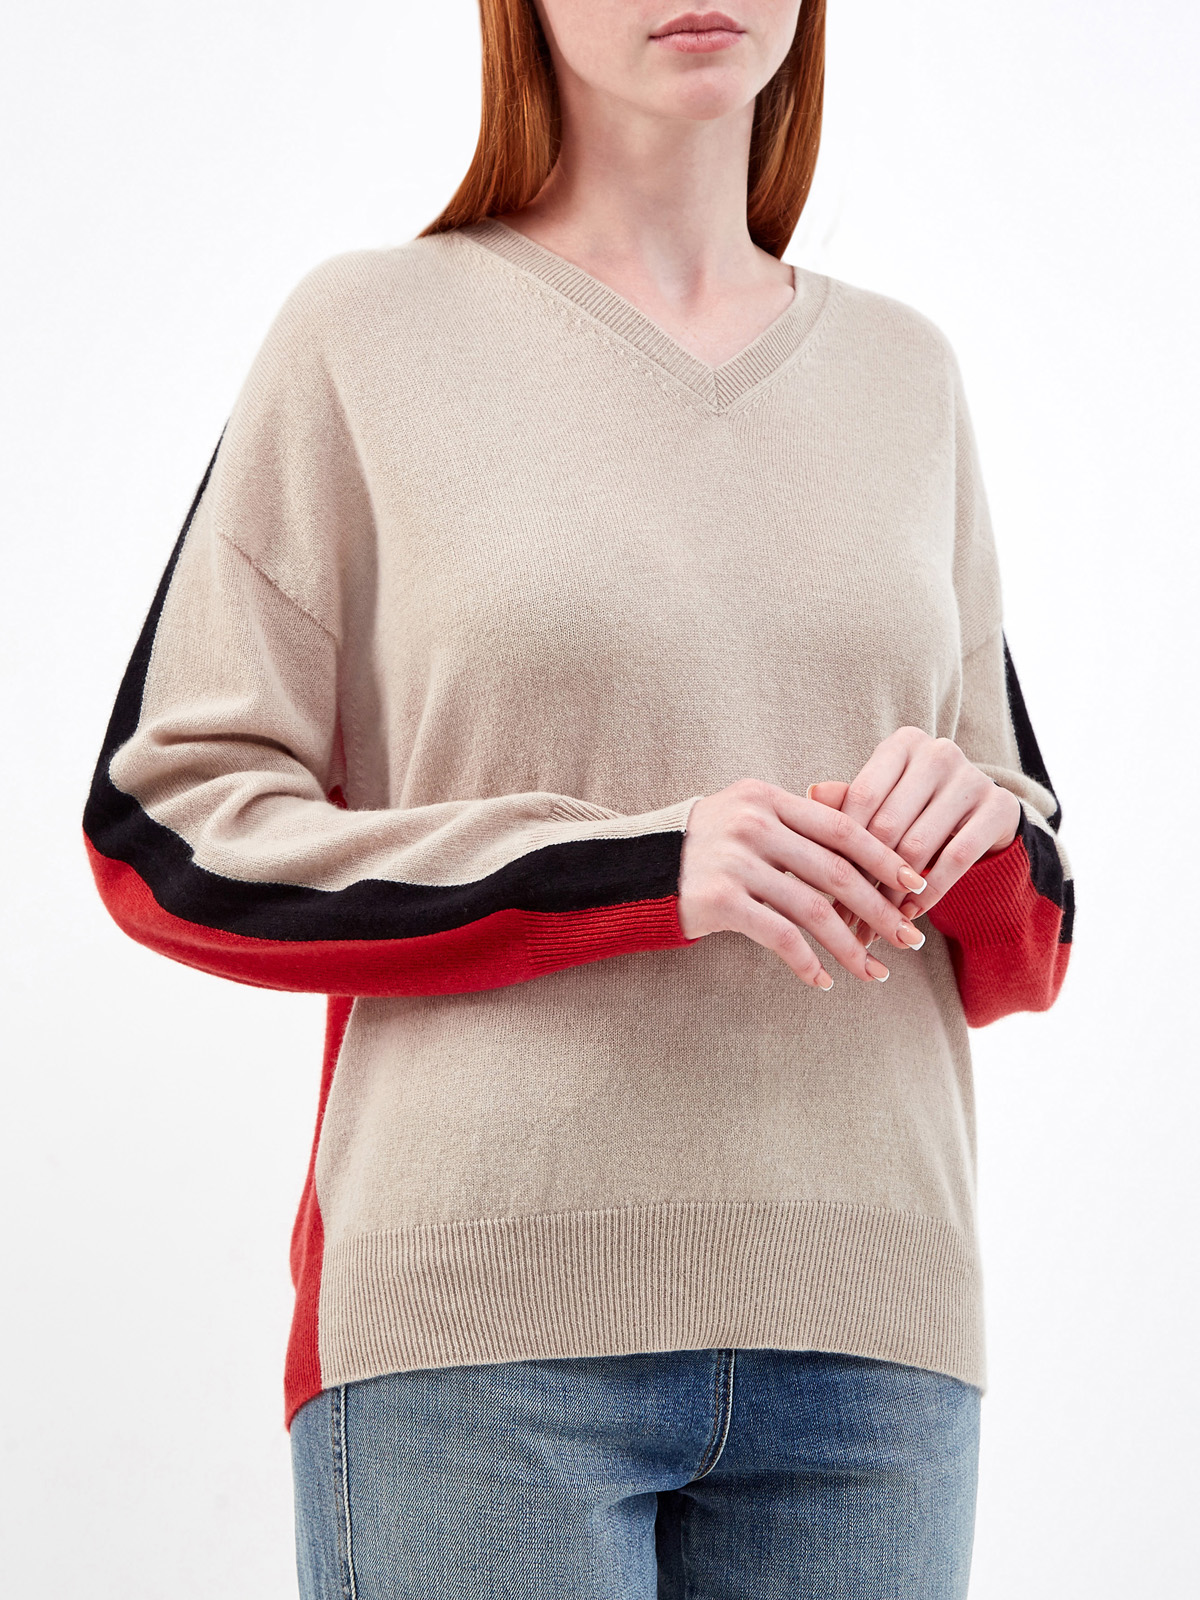 Пуловер в стиле colorblock из мягкого кашемира LORENA ANTONIAZZI, цвет мульти, размер 42;44;46;40 - фото 3